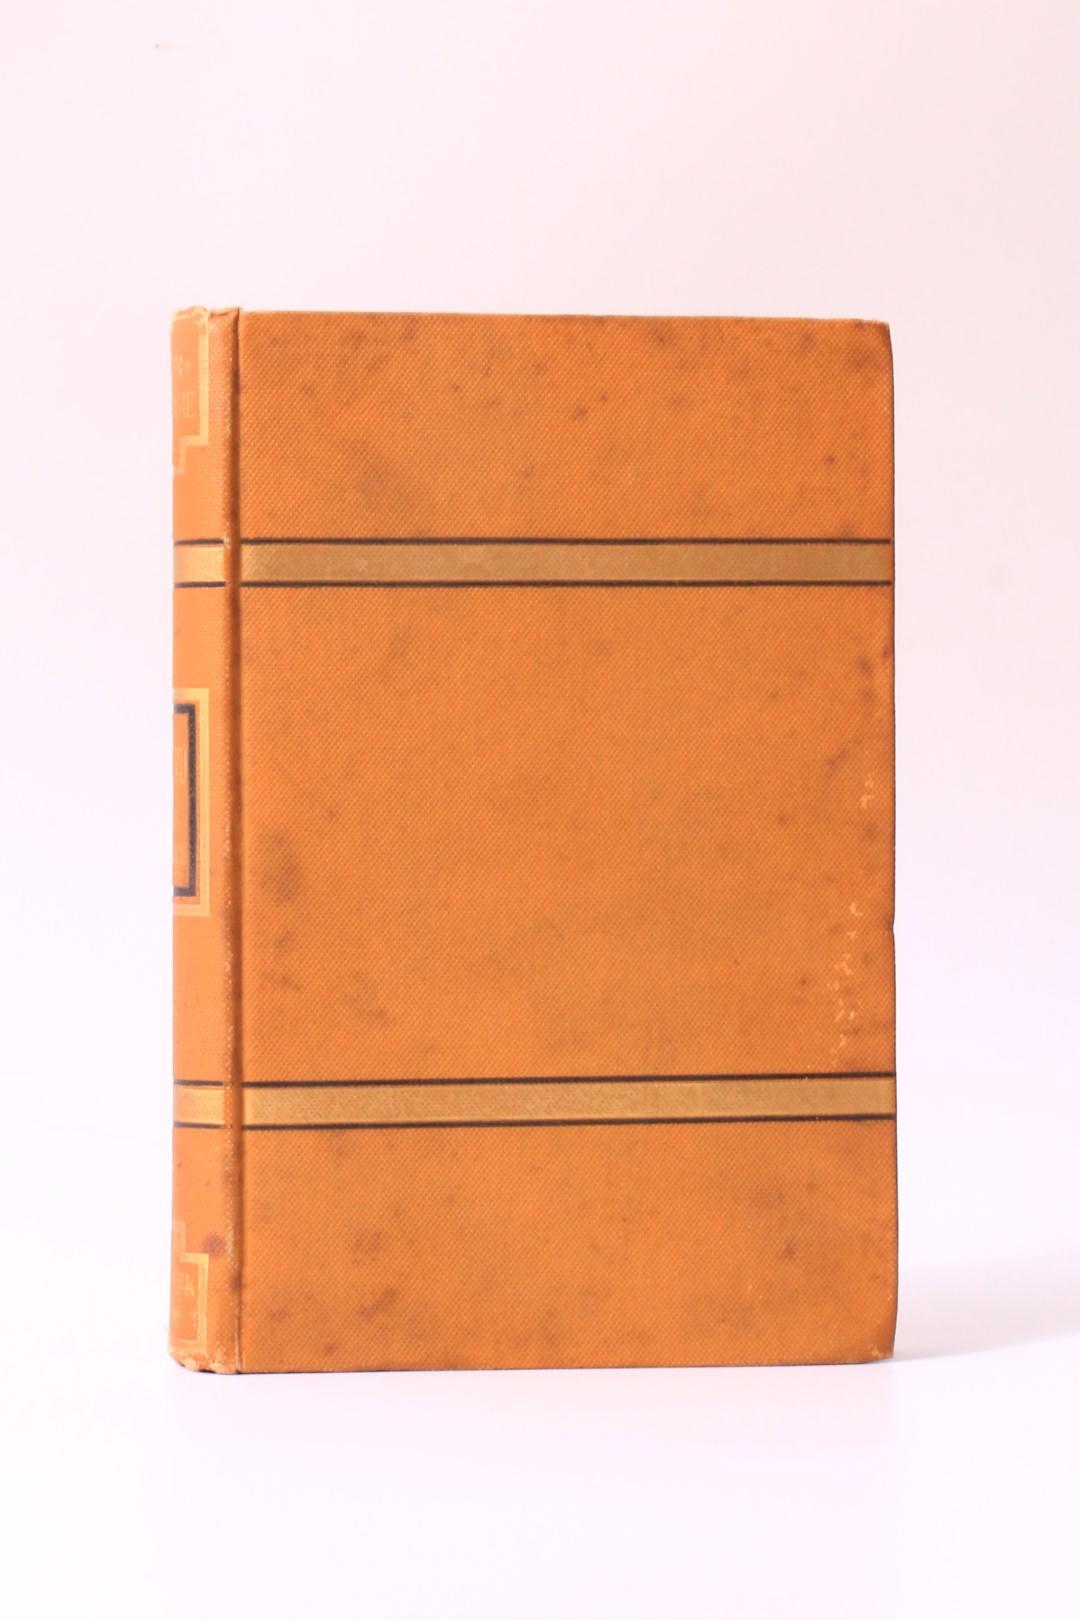 John Emersie [Mrs Ansel Oppenheim] - Allisto: A Romance - John D. Williams, 1884, First Edition.